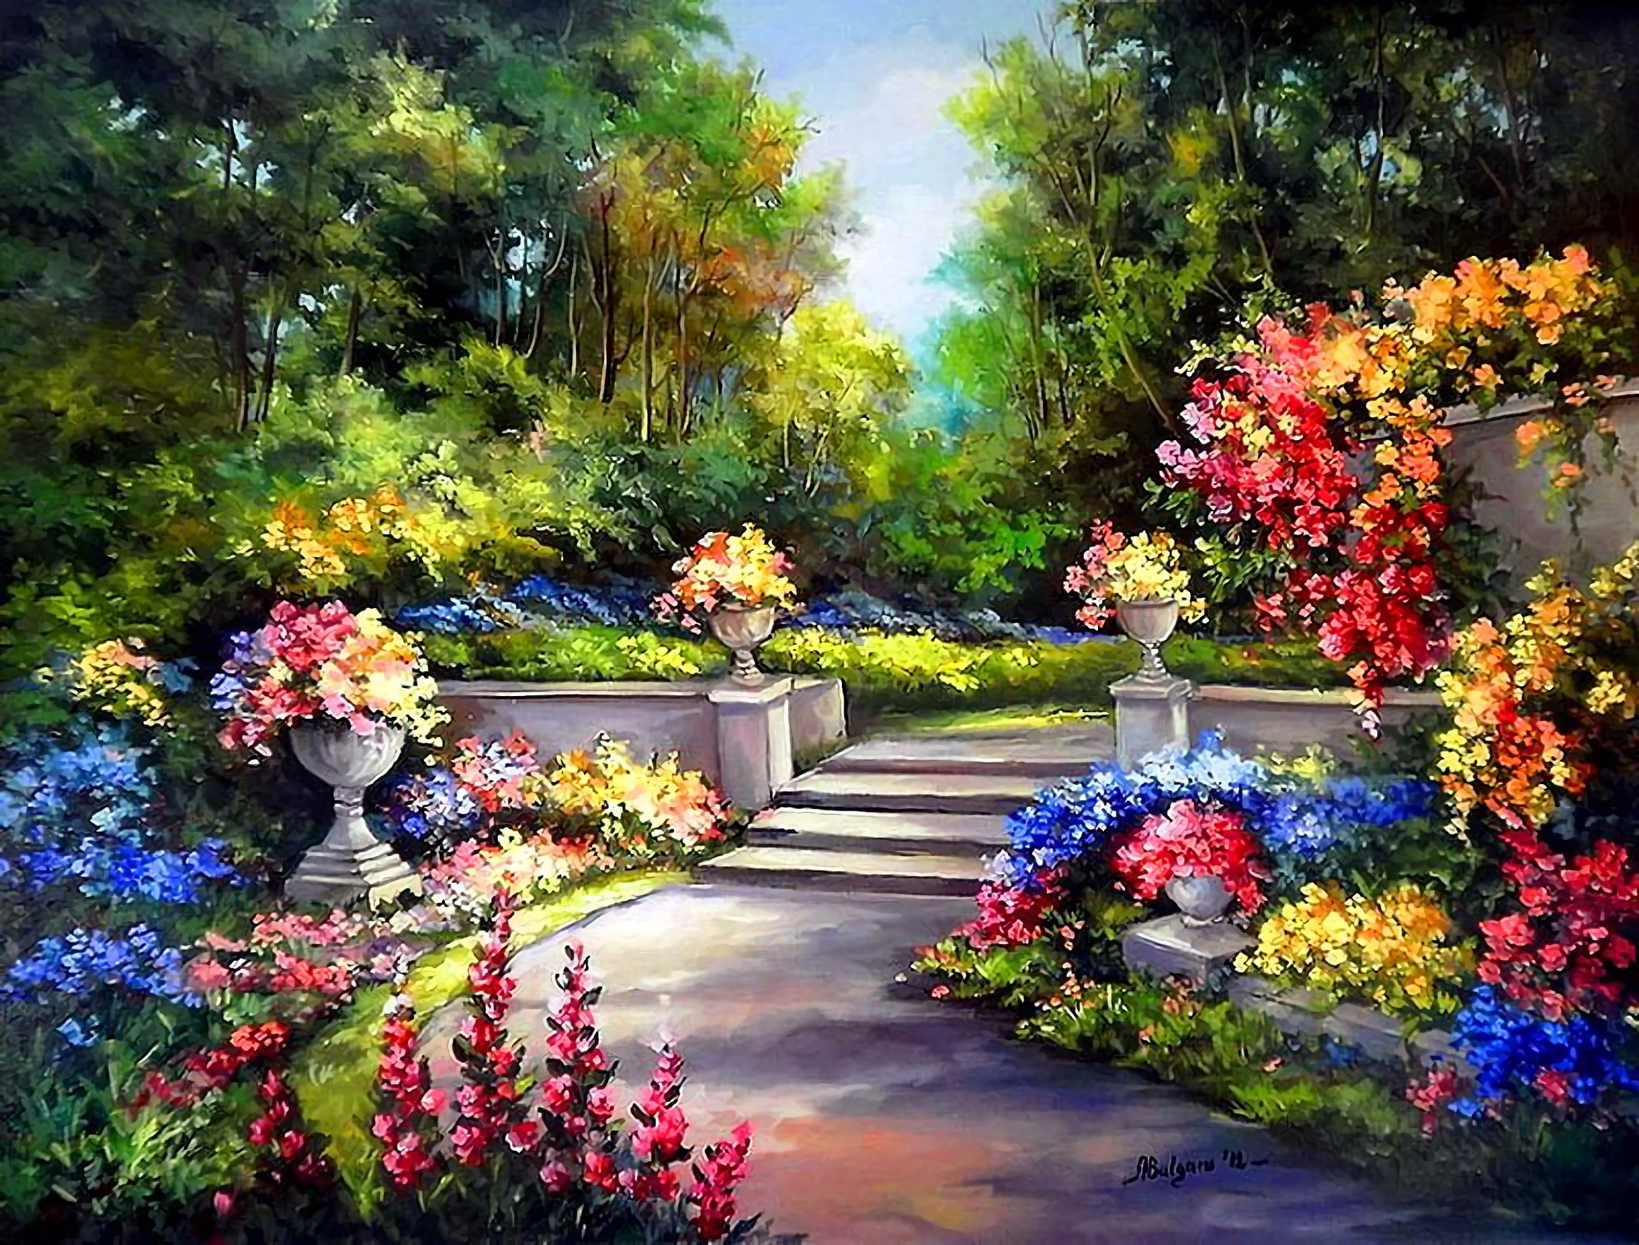 Mùa Xuân đến rồi! Hãy ngắm nhìn bức tranh nền sân vườn đầy hoa nở rực rỡ, mang đến cho bạn một cảm giác tươi mới và năng động.